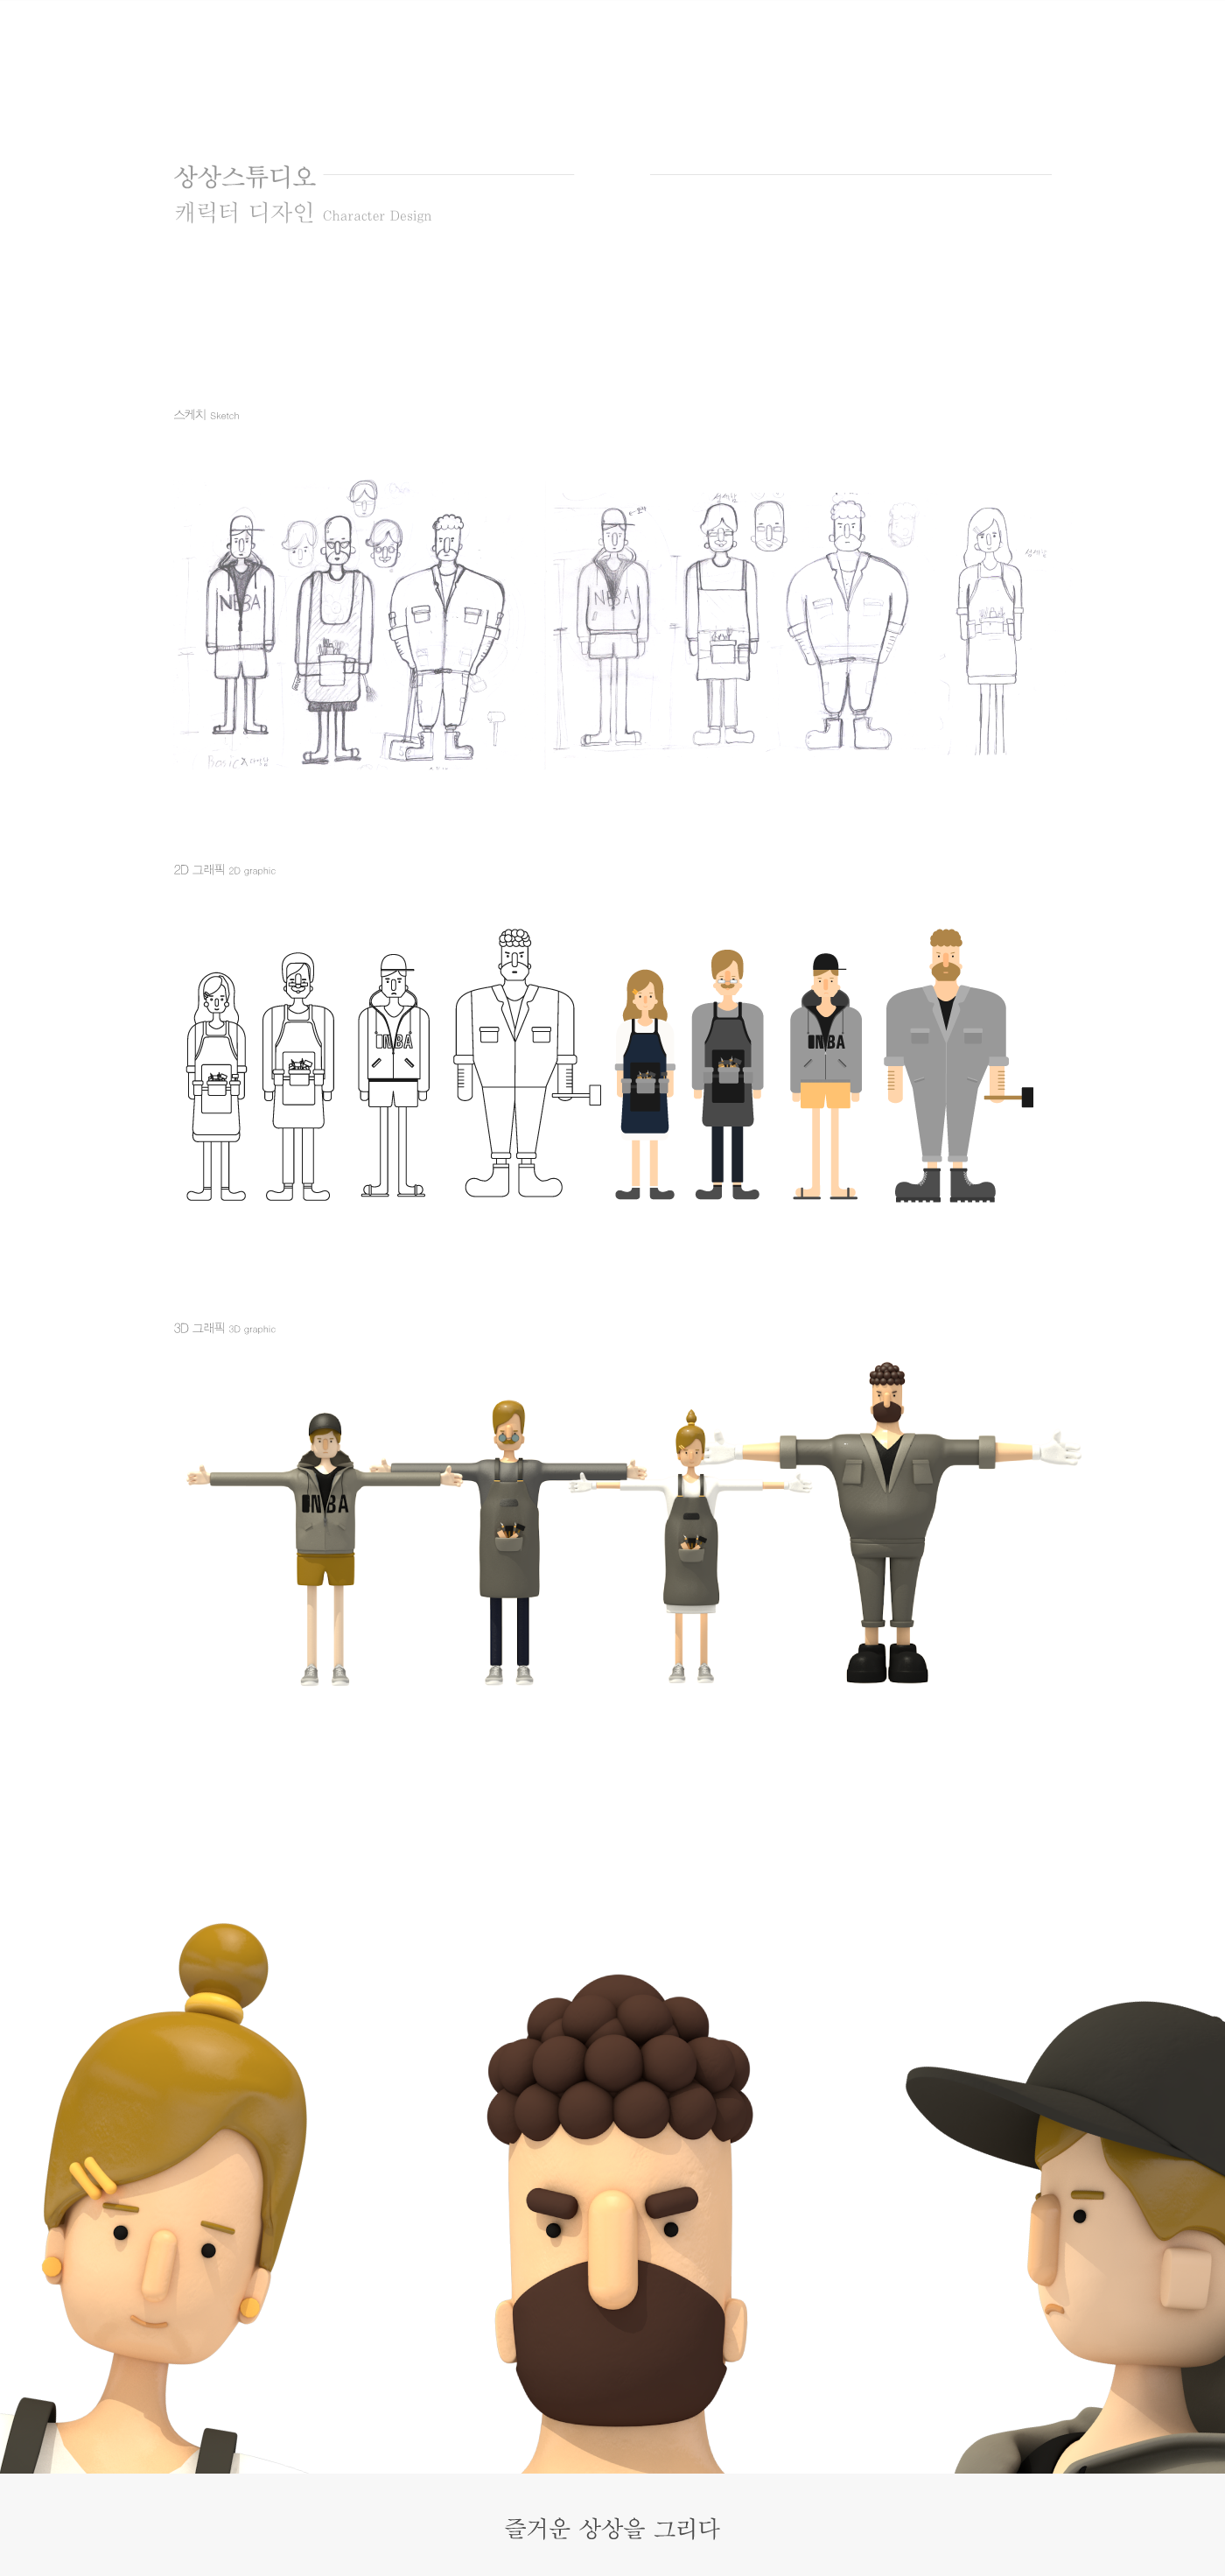 VDAS animation  motion Character 3D Imagine studio branding  Art World ILLUSTRATION 